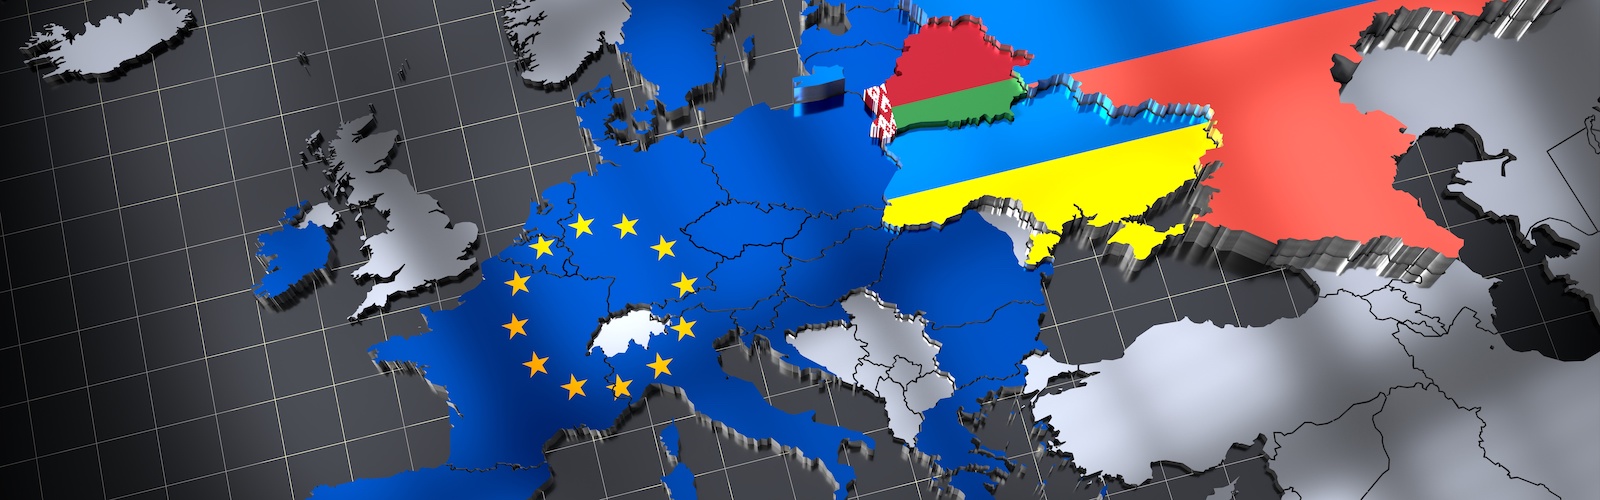 Il conflitto russo-ucraino: è possibile una politica di difesa europea?